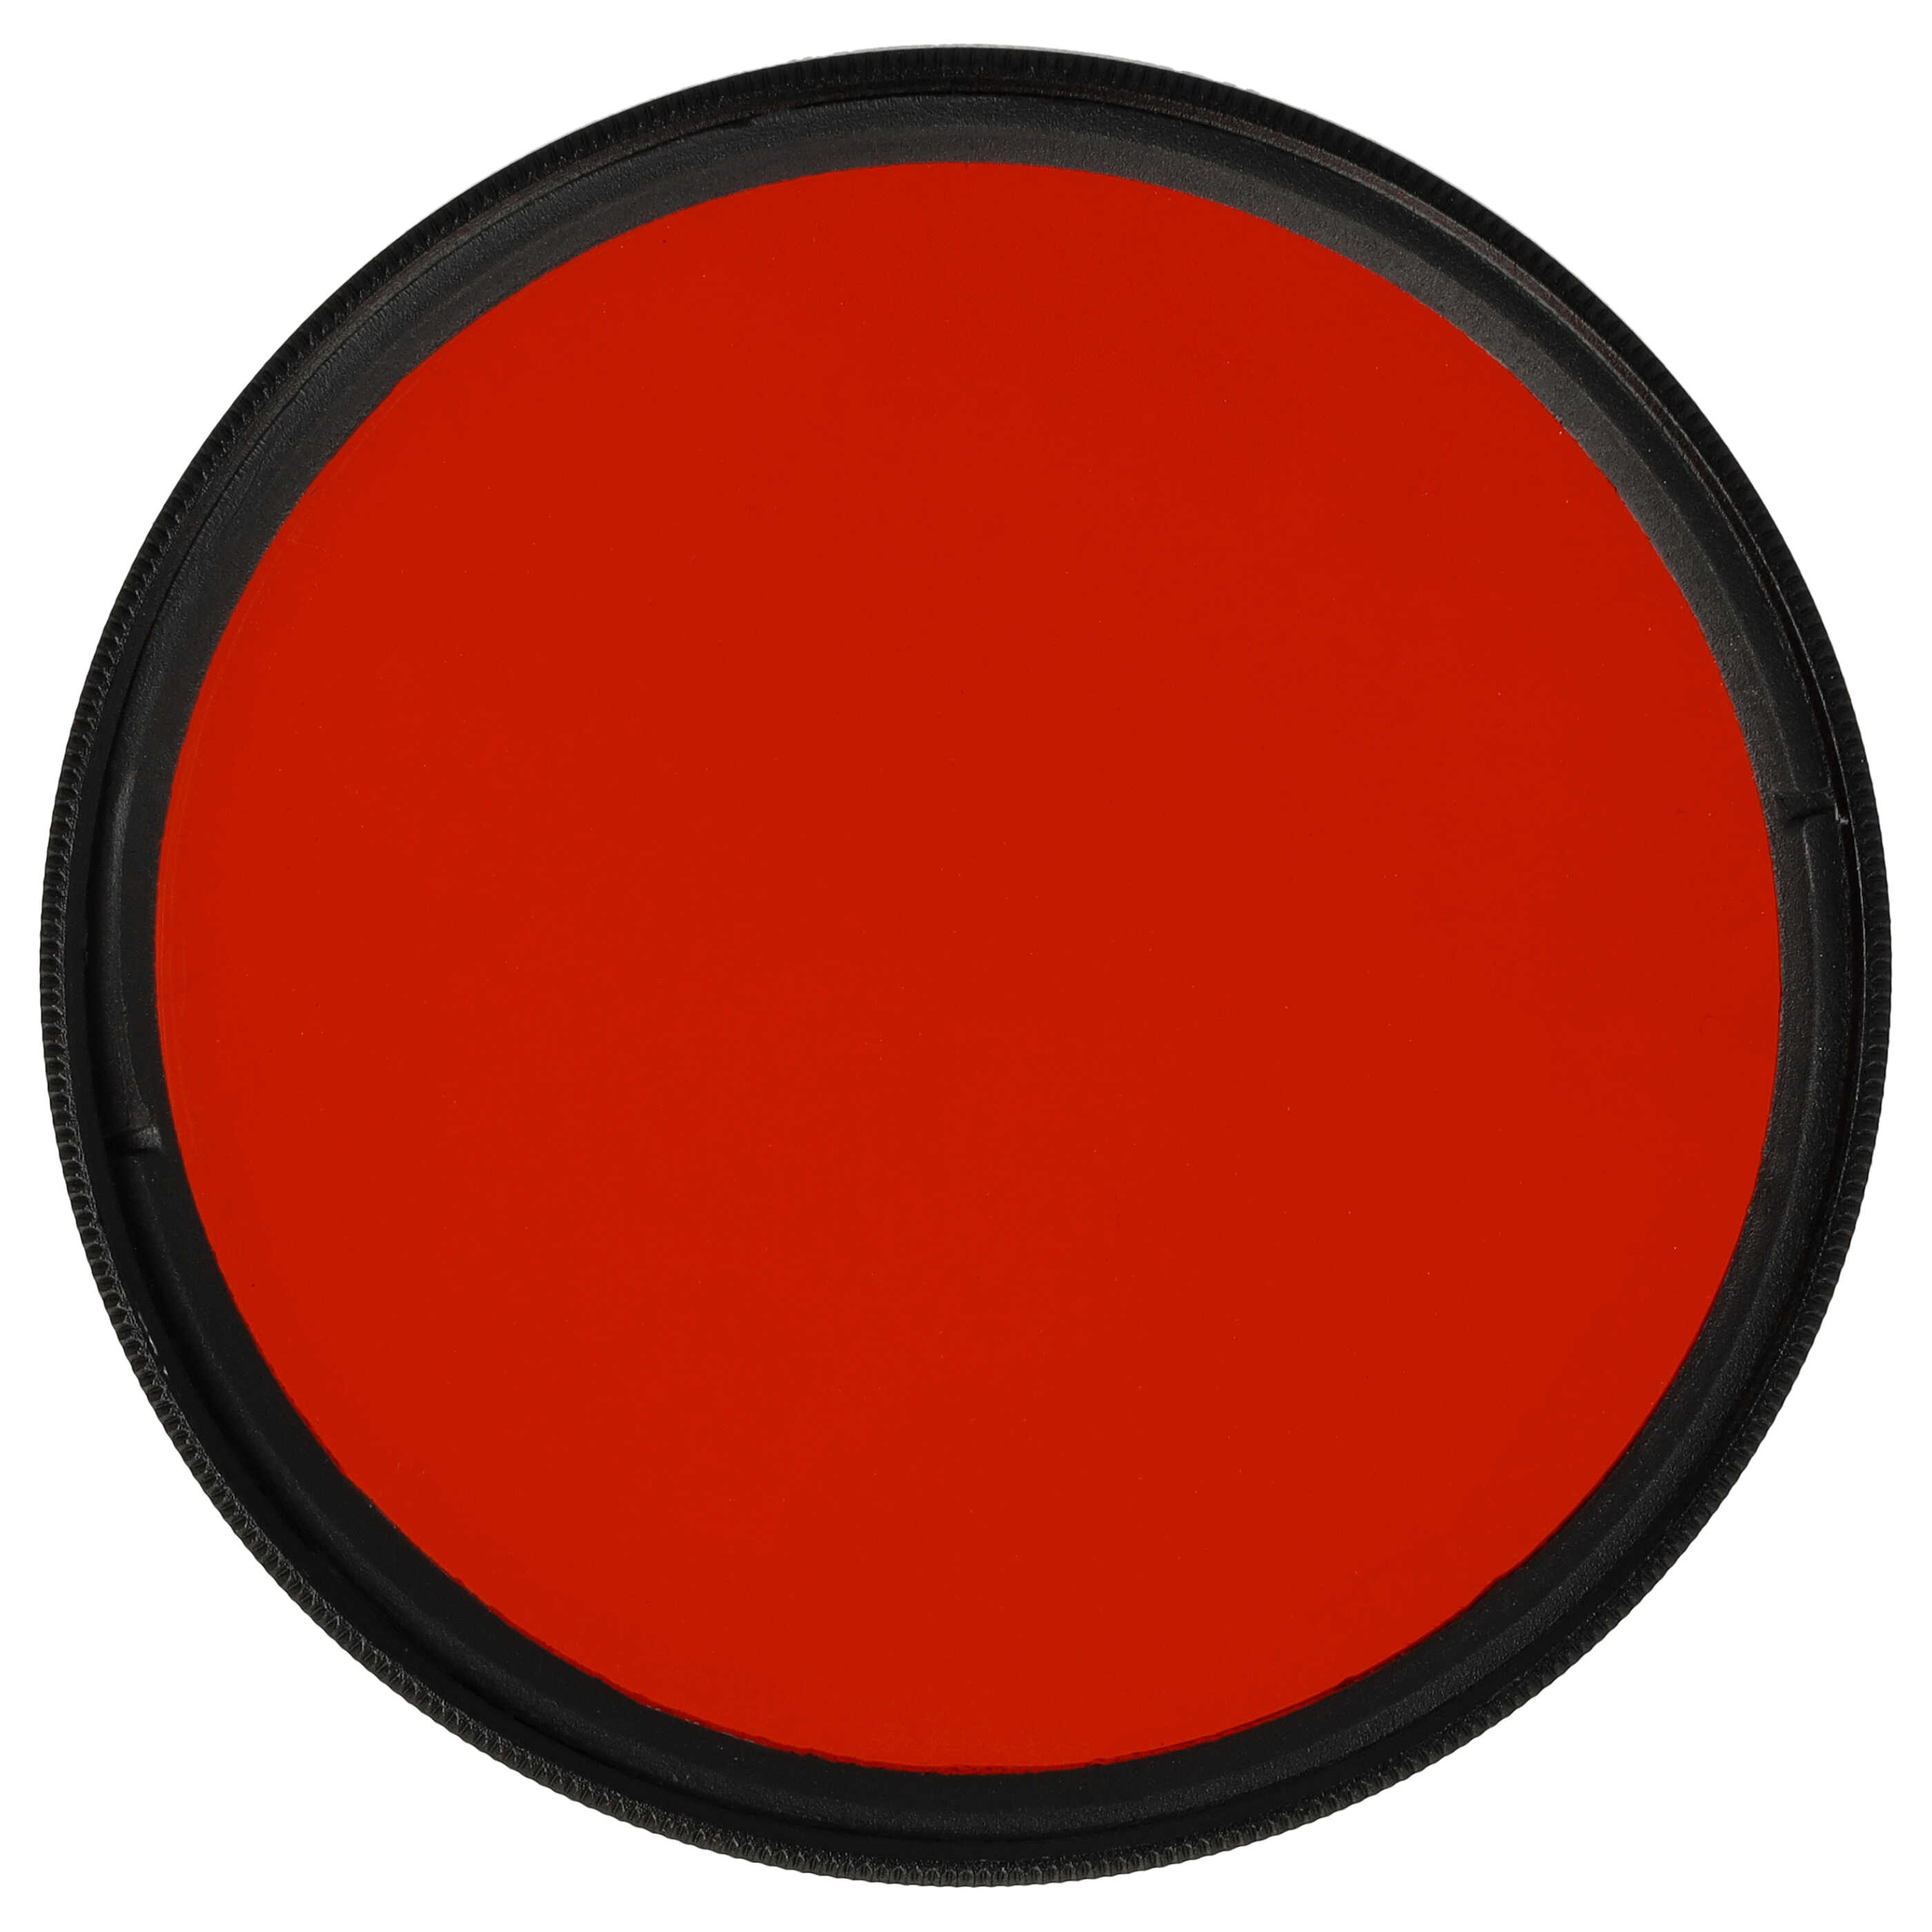 Farbfilter orange passend für Kamera Objektive mit 62 mm Filtergewinde - Orangefilter